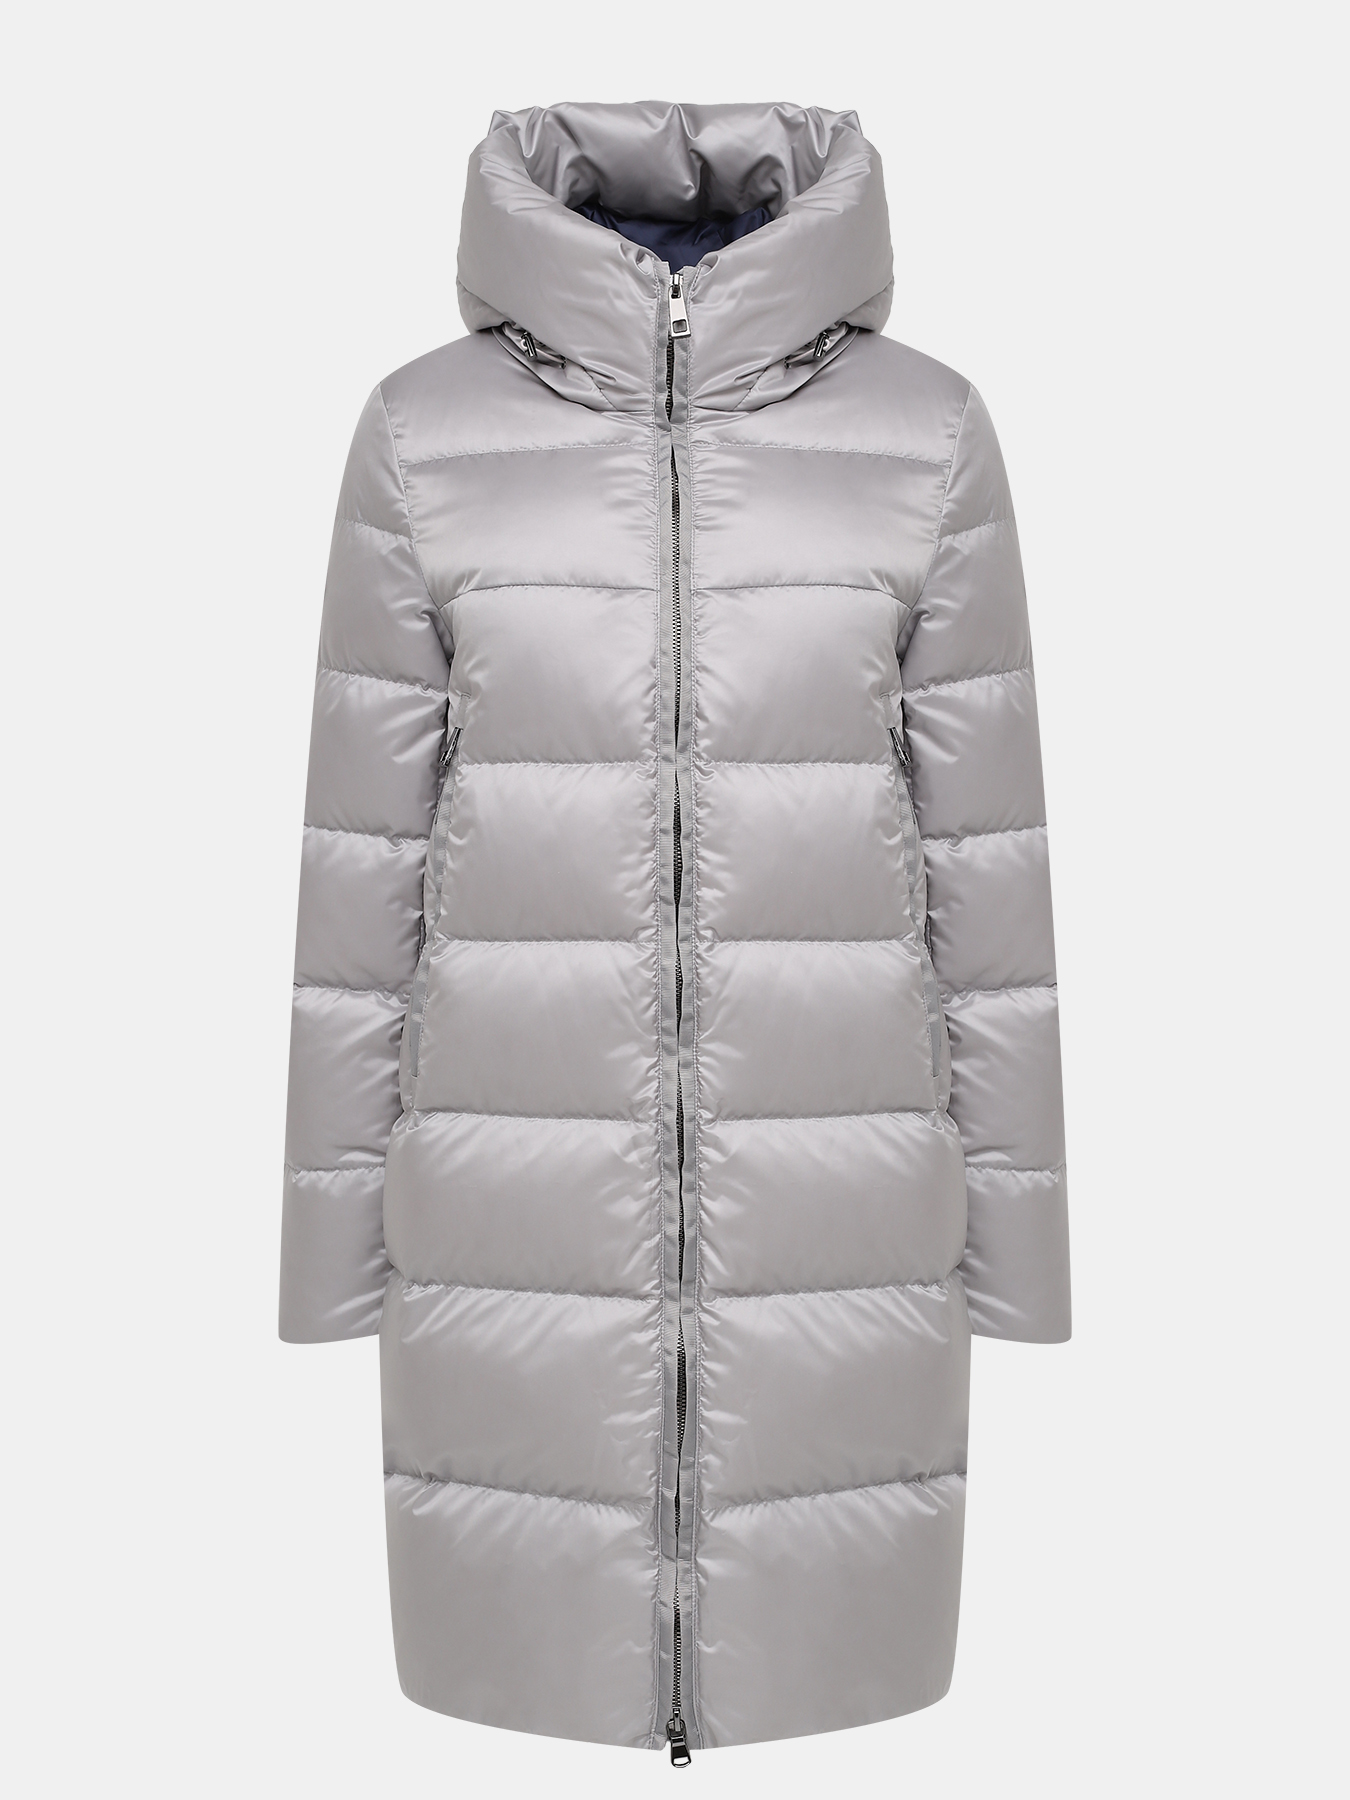 Пальто зимнее AVI 433618-018, цвет серый, размер 36